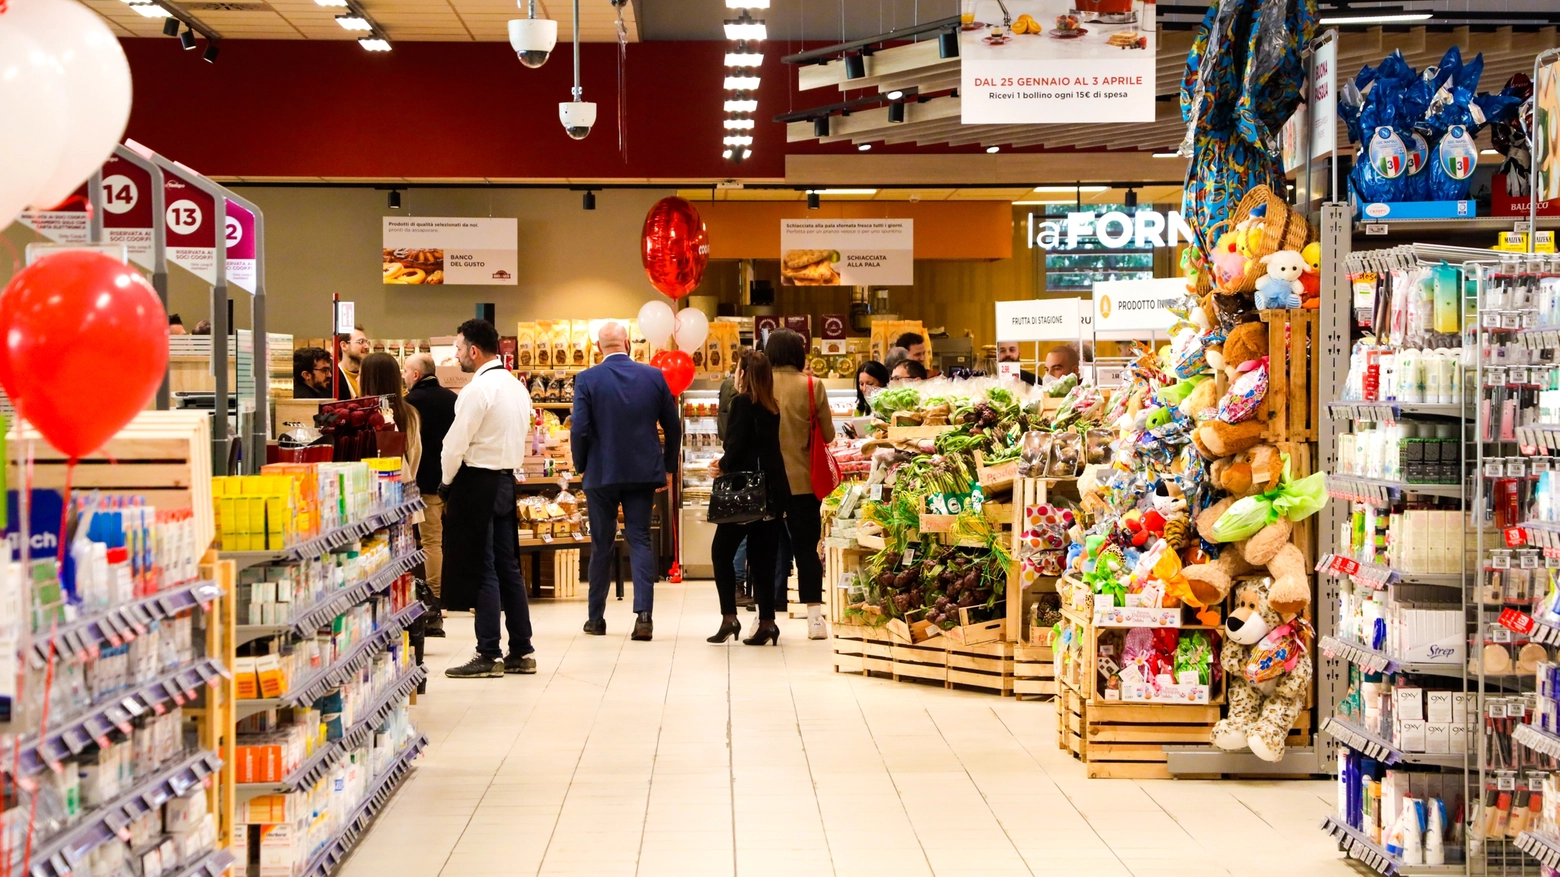 Serrande alzate in molti supermercati per il giorno di Pasquetta (Germogli)